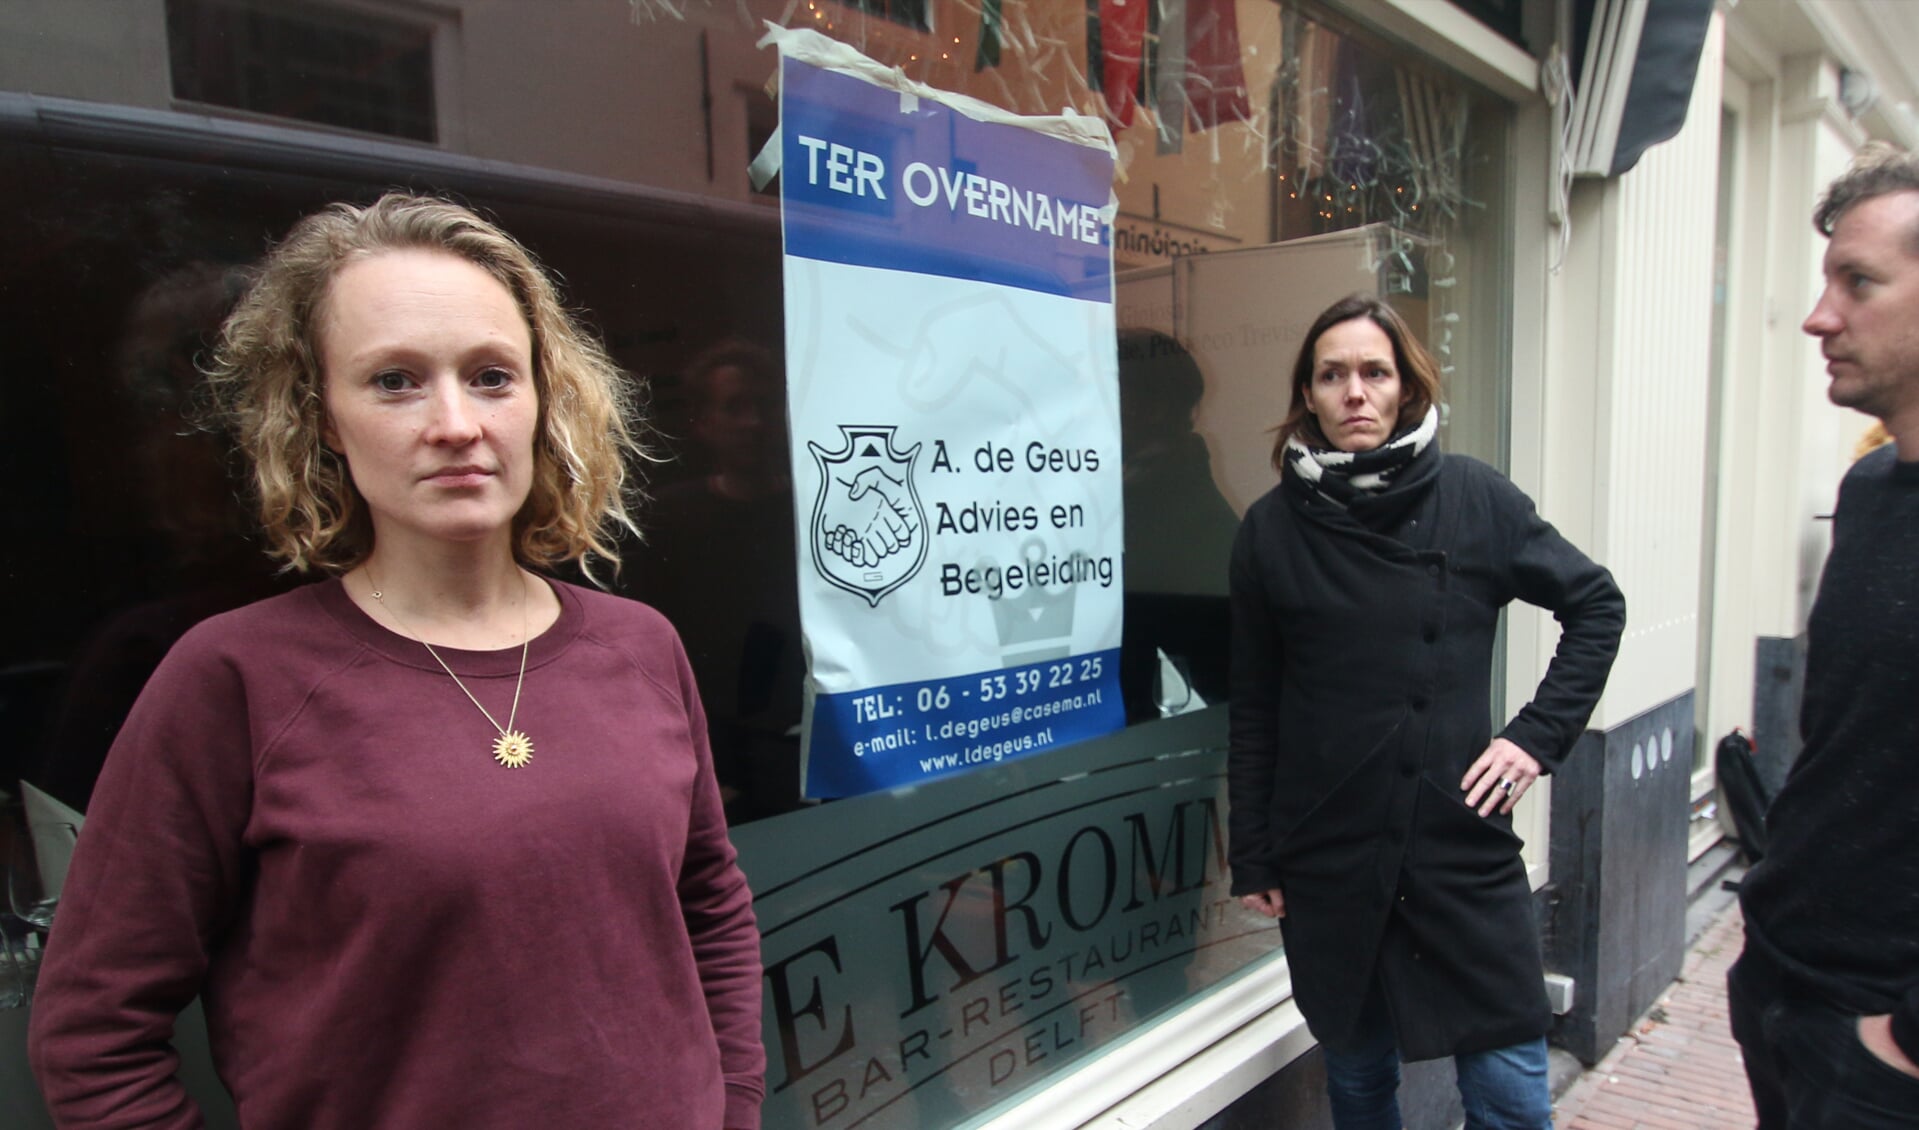 Volgens Nina Voets (links) en Cas Marks (rechts) van Club Ciccionina is de verloedering van de Kromstraat in aantocht. Restaurant De Kromme kon de hoge huur niet meer betalen en ging failliet. Centraal: Fennie Kostense van Steck. 